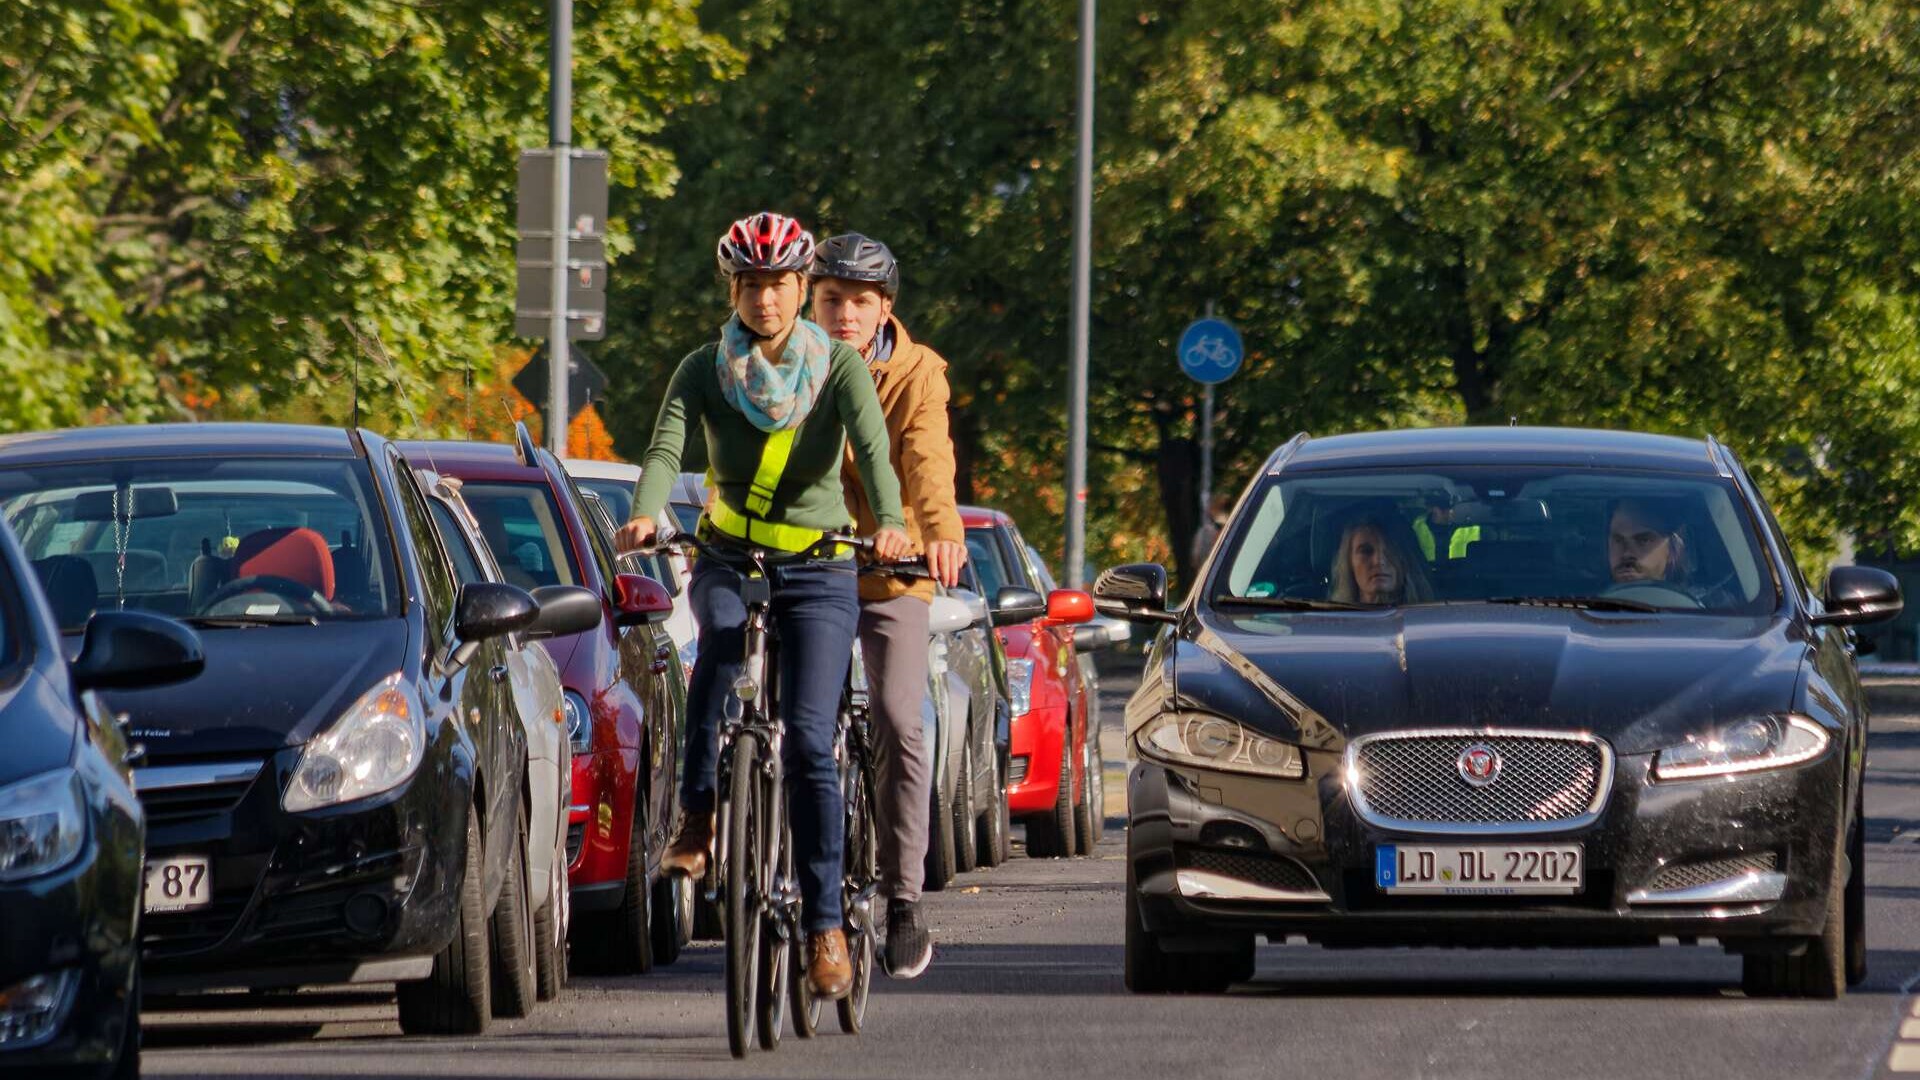 Dresden – Bild zum Thema Verkehrrsicherheit. Fotosession mit VBG-Beschäftigten.